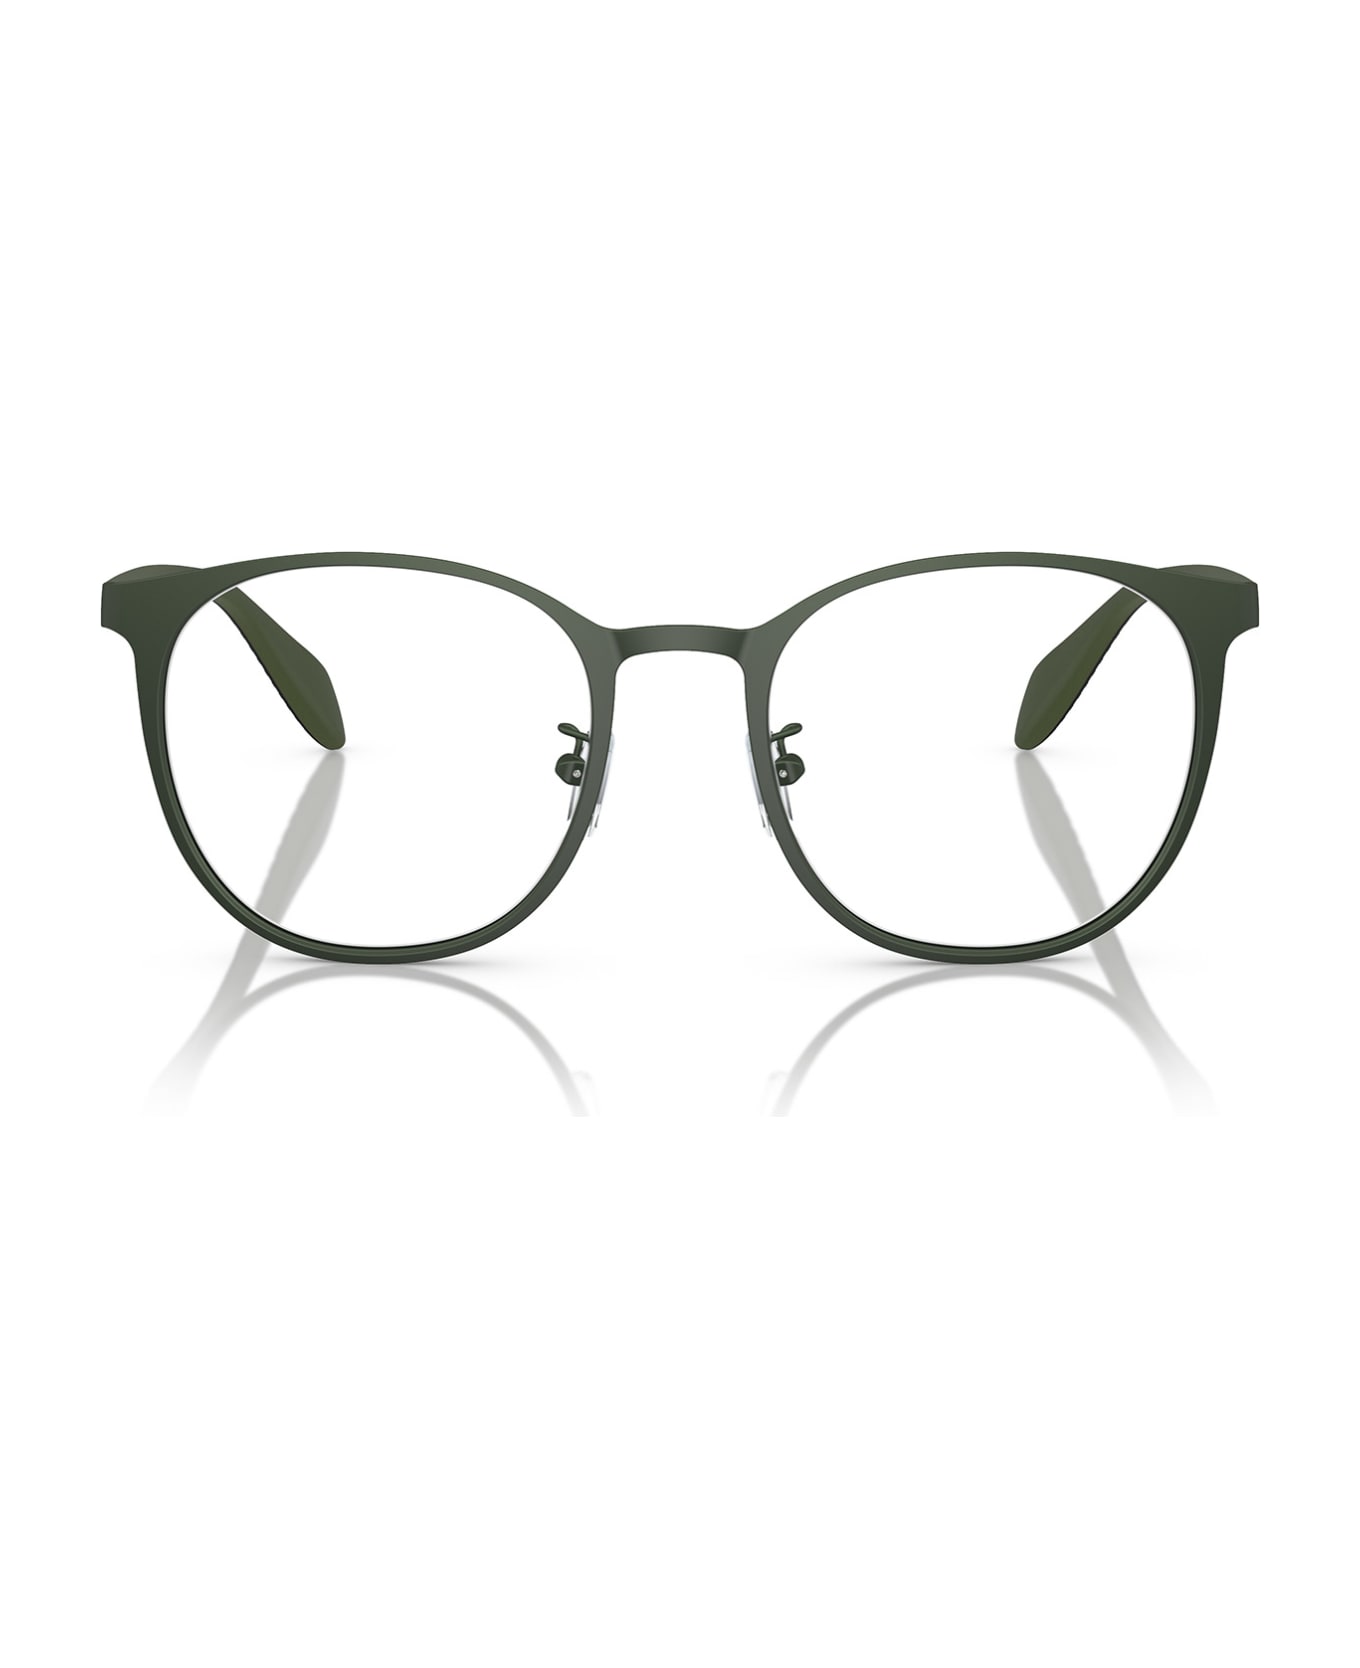 Emporio Armani Ea1148 Matte Green Glasses - Matte Green アイウェア